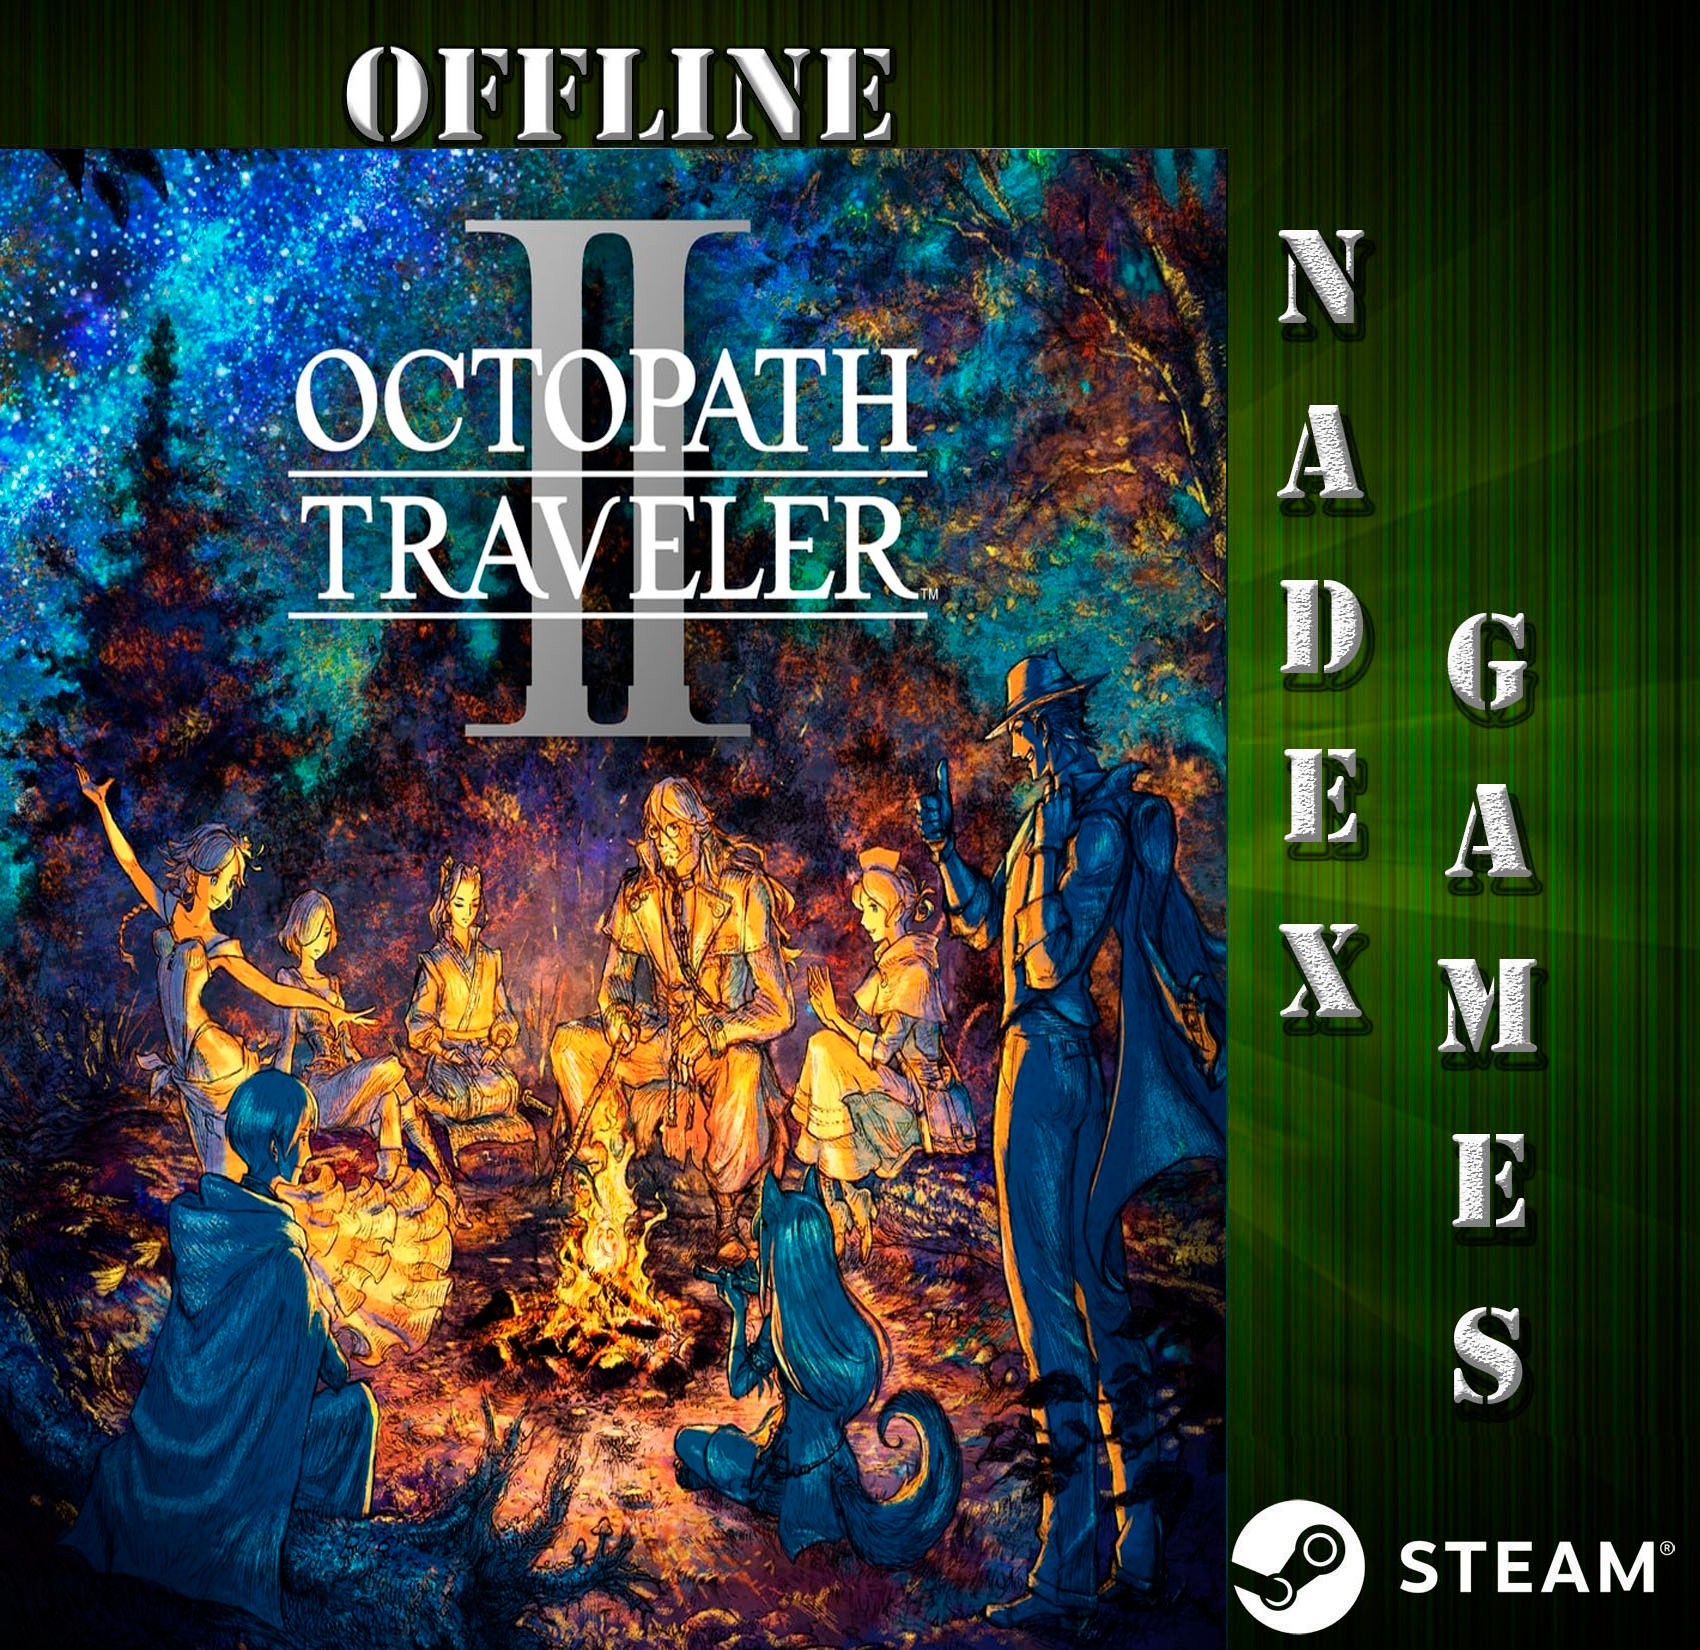 ○ Octopath Traveler PC  Legendado em Português PT-BR Steam Game 